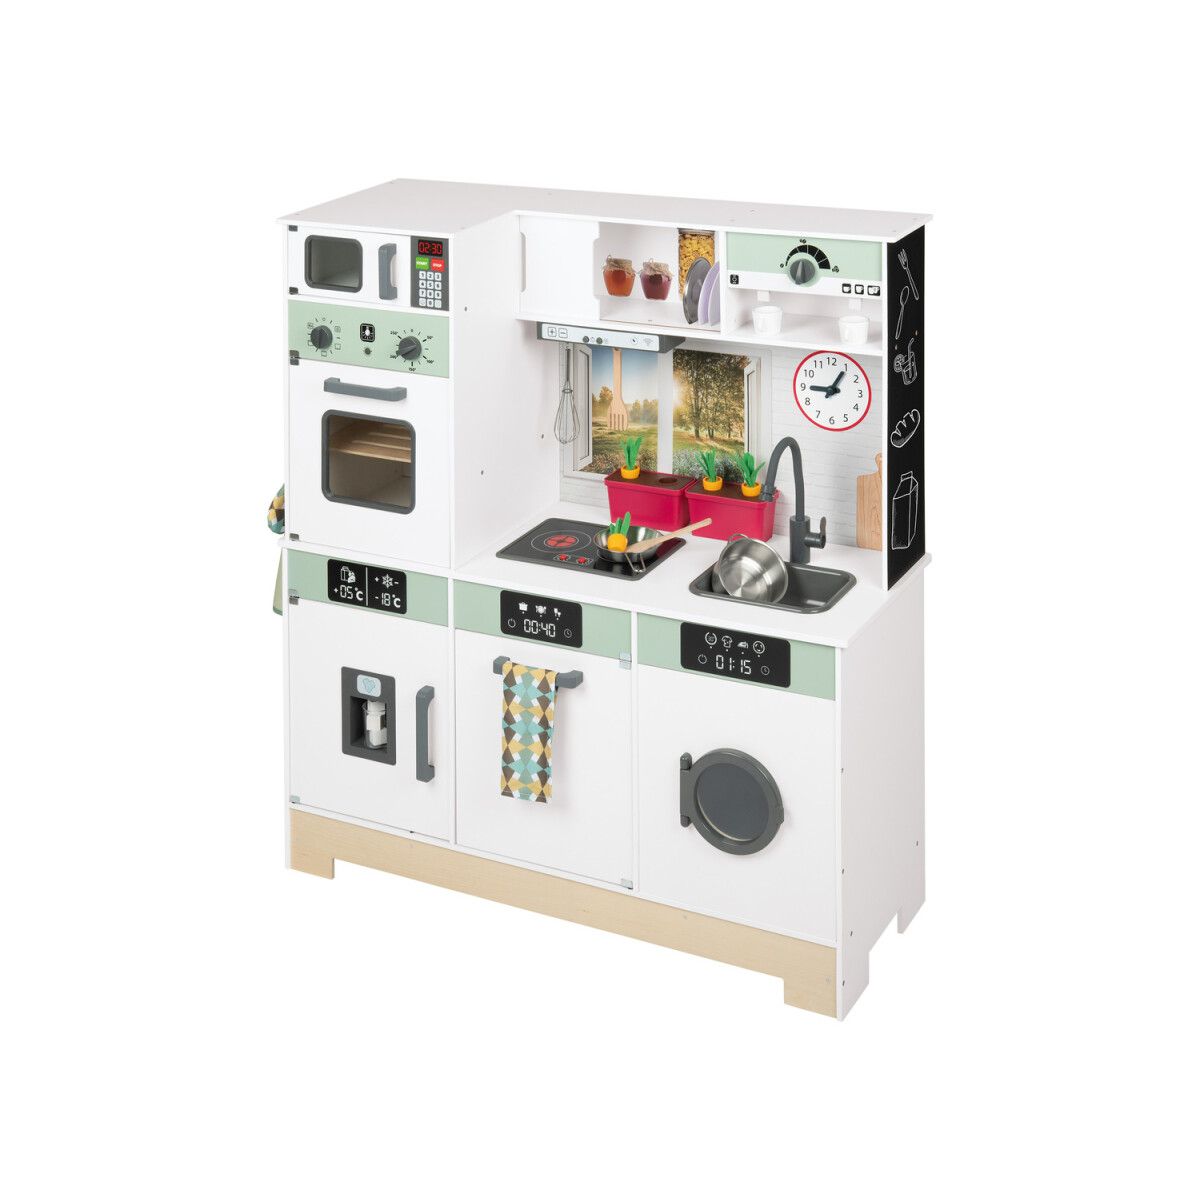 Playtive Holz Spielküche »Gourmet«, mit Licht und Sound - B-Ware neuwertig,  135,99 €